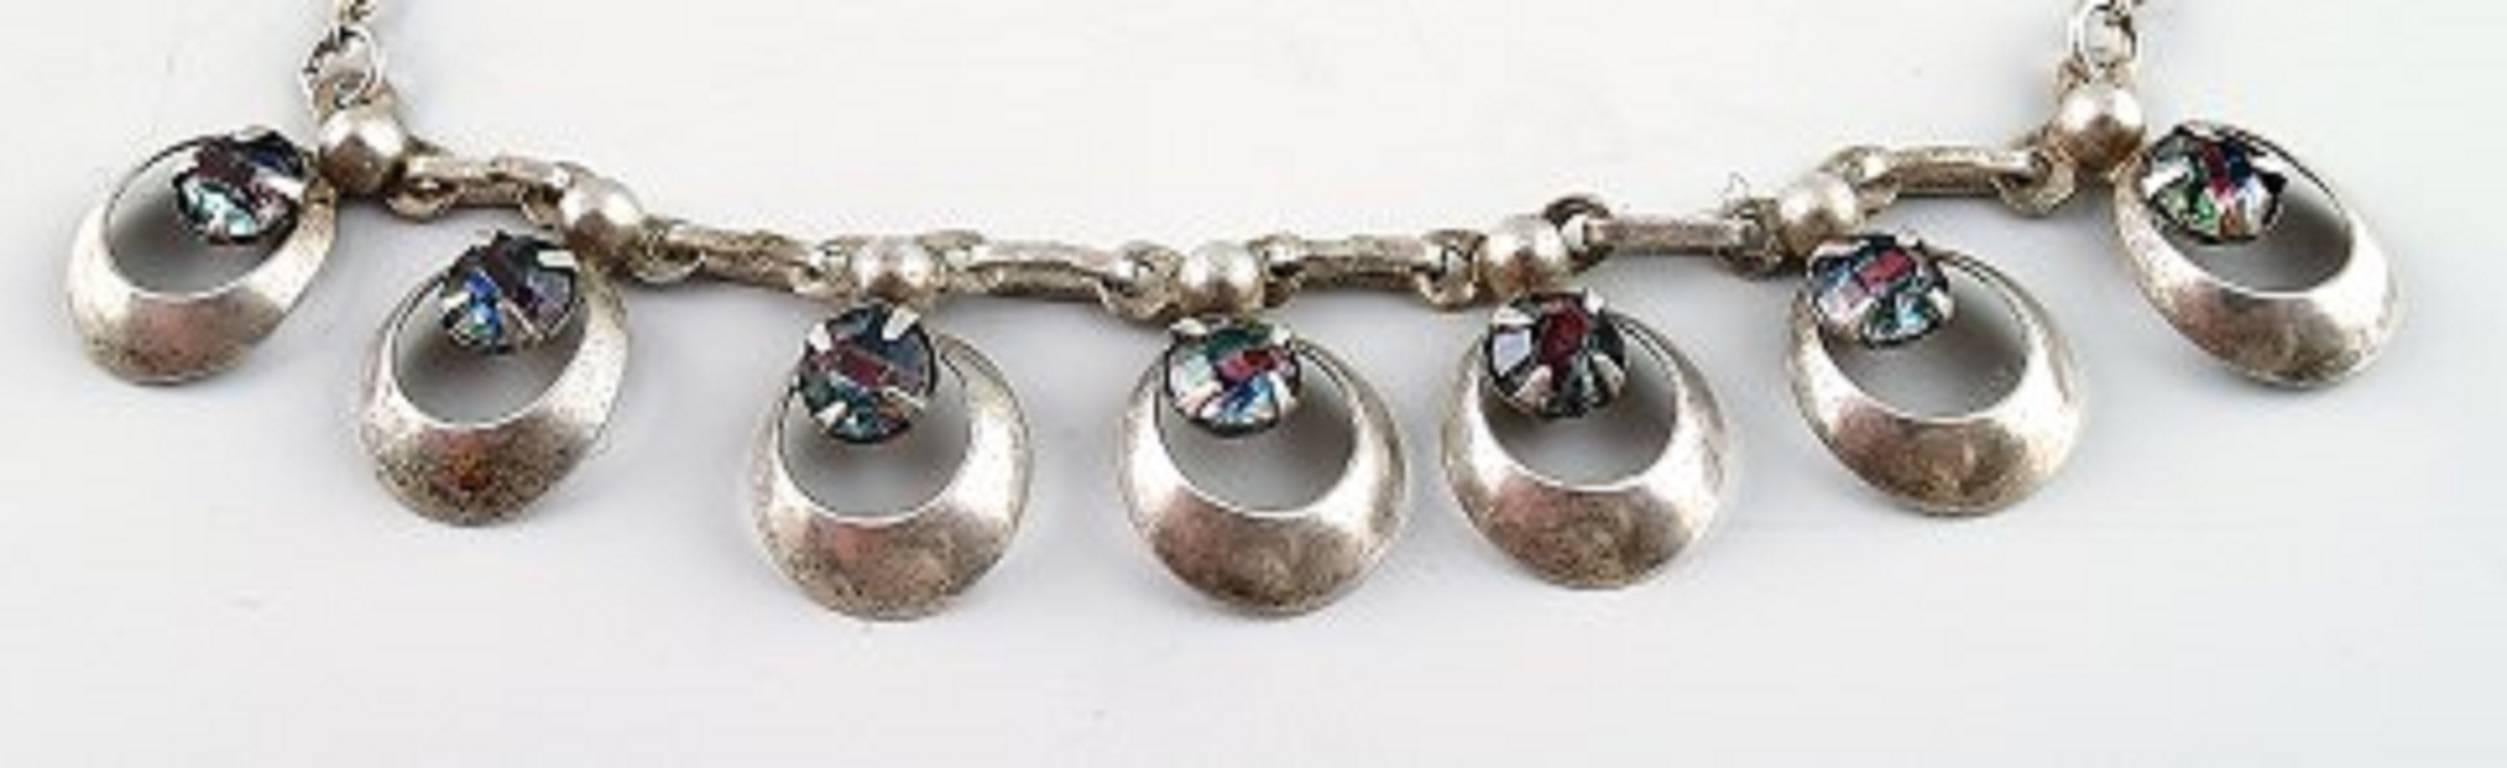 Dänisches Design Sterling Silber Halskette mit Steinen in modernem Design.
Gestempelt: 830
In gutem Zustand.
Länge: ca. 46 cm